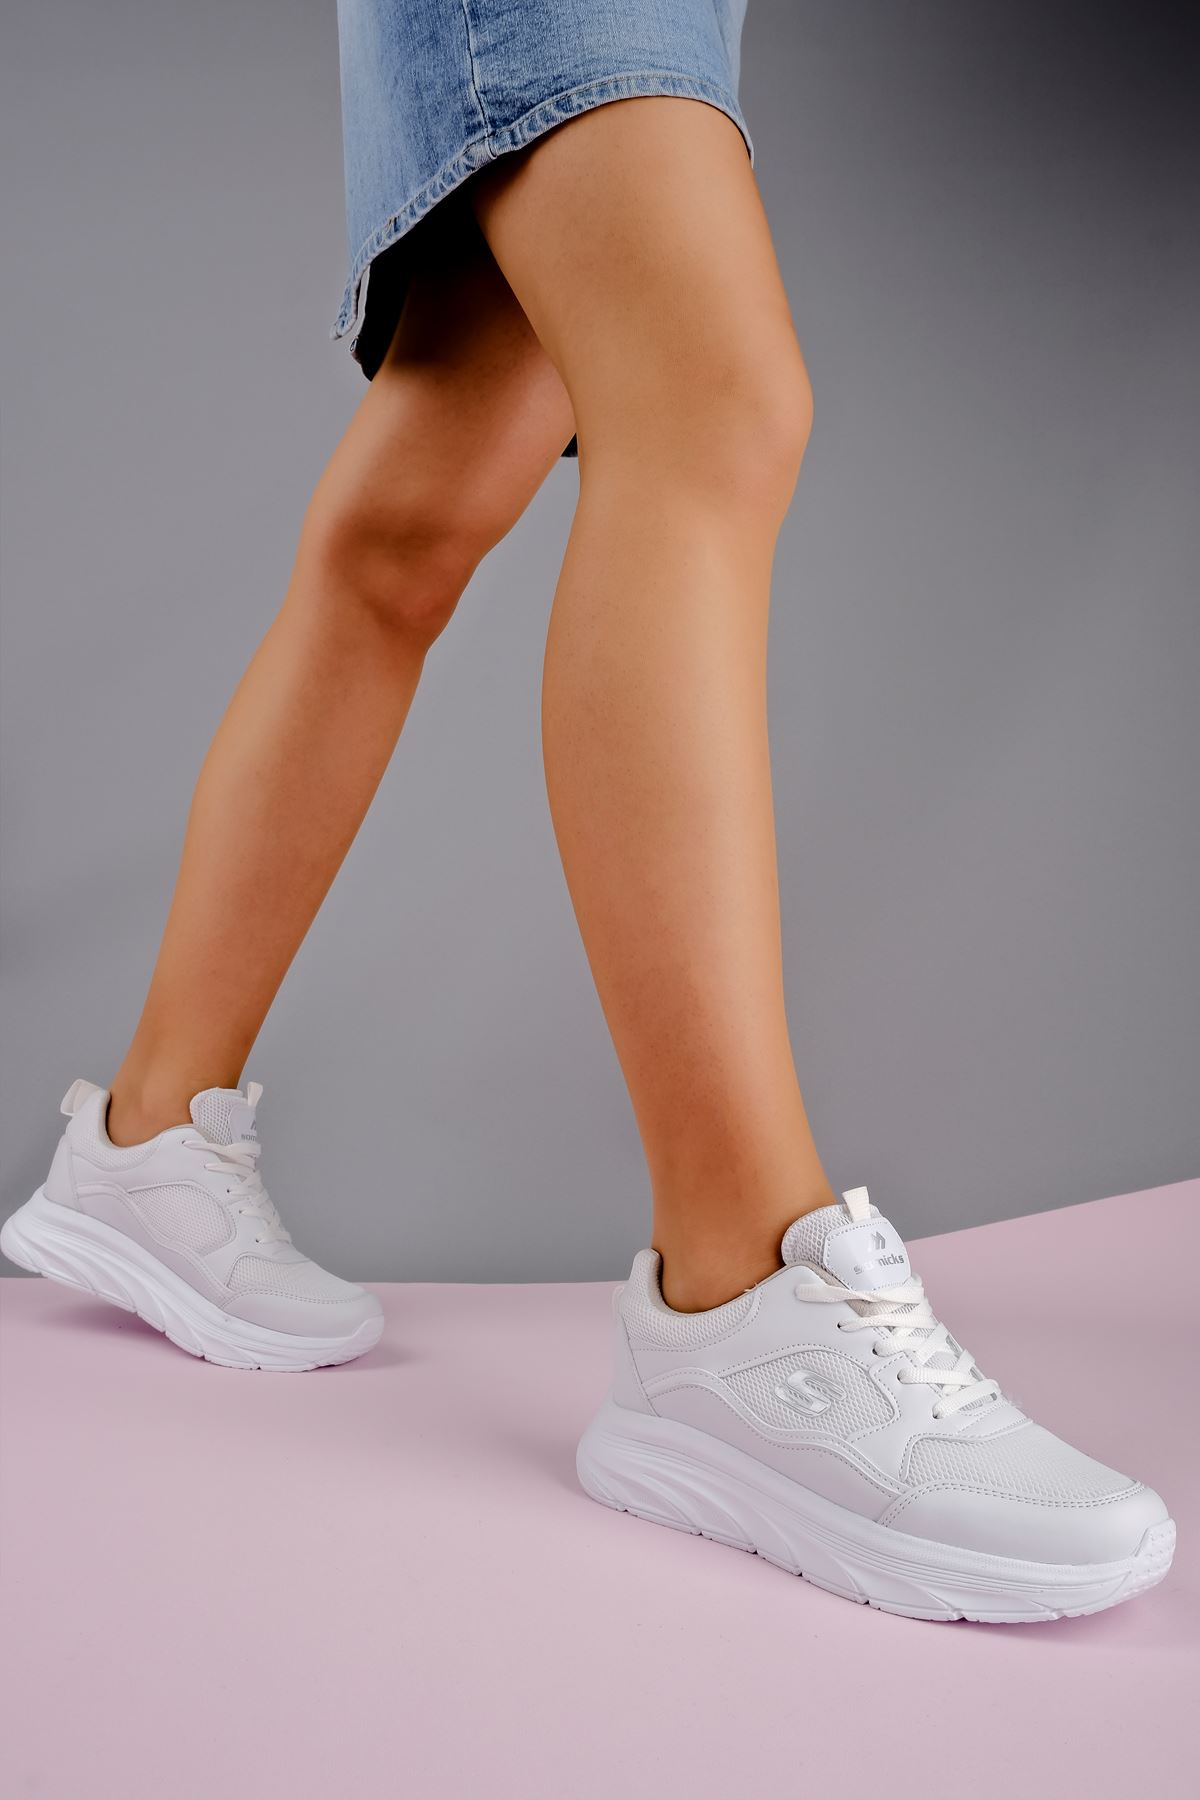 Porte Kadın Spor Ayakkabı Yüksek Taban-beyaz